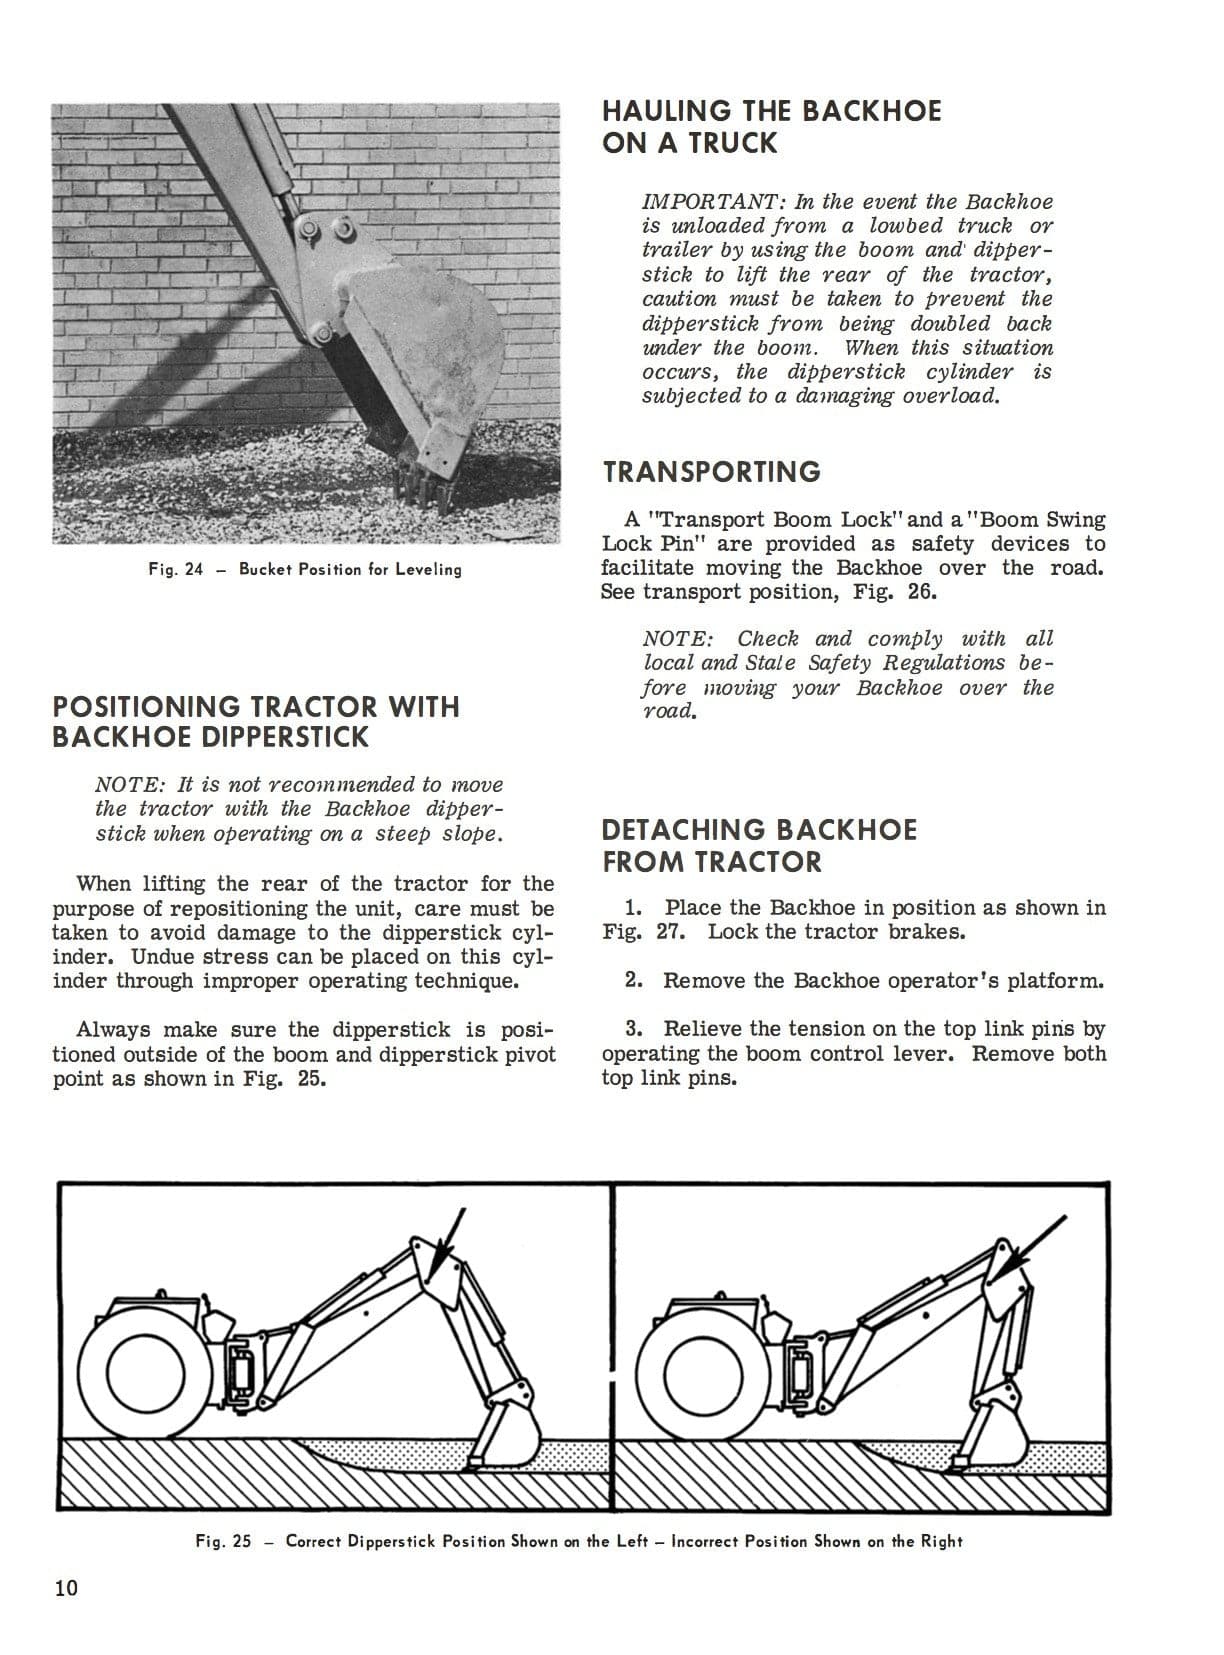 Massey Ferguson Industrial MF 212 Backhoe Operator's Manual